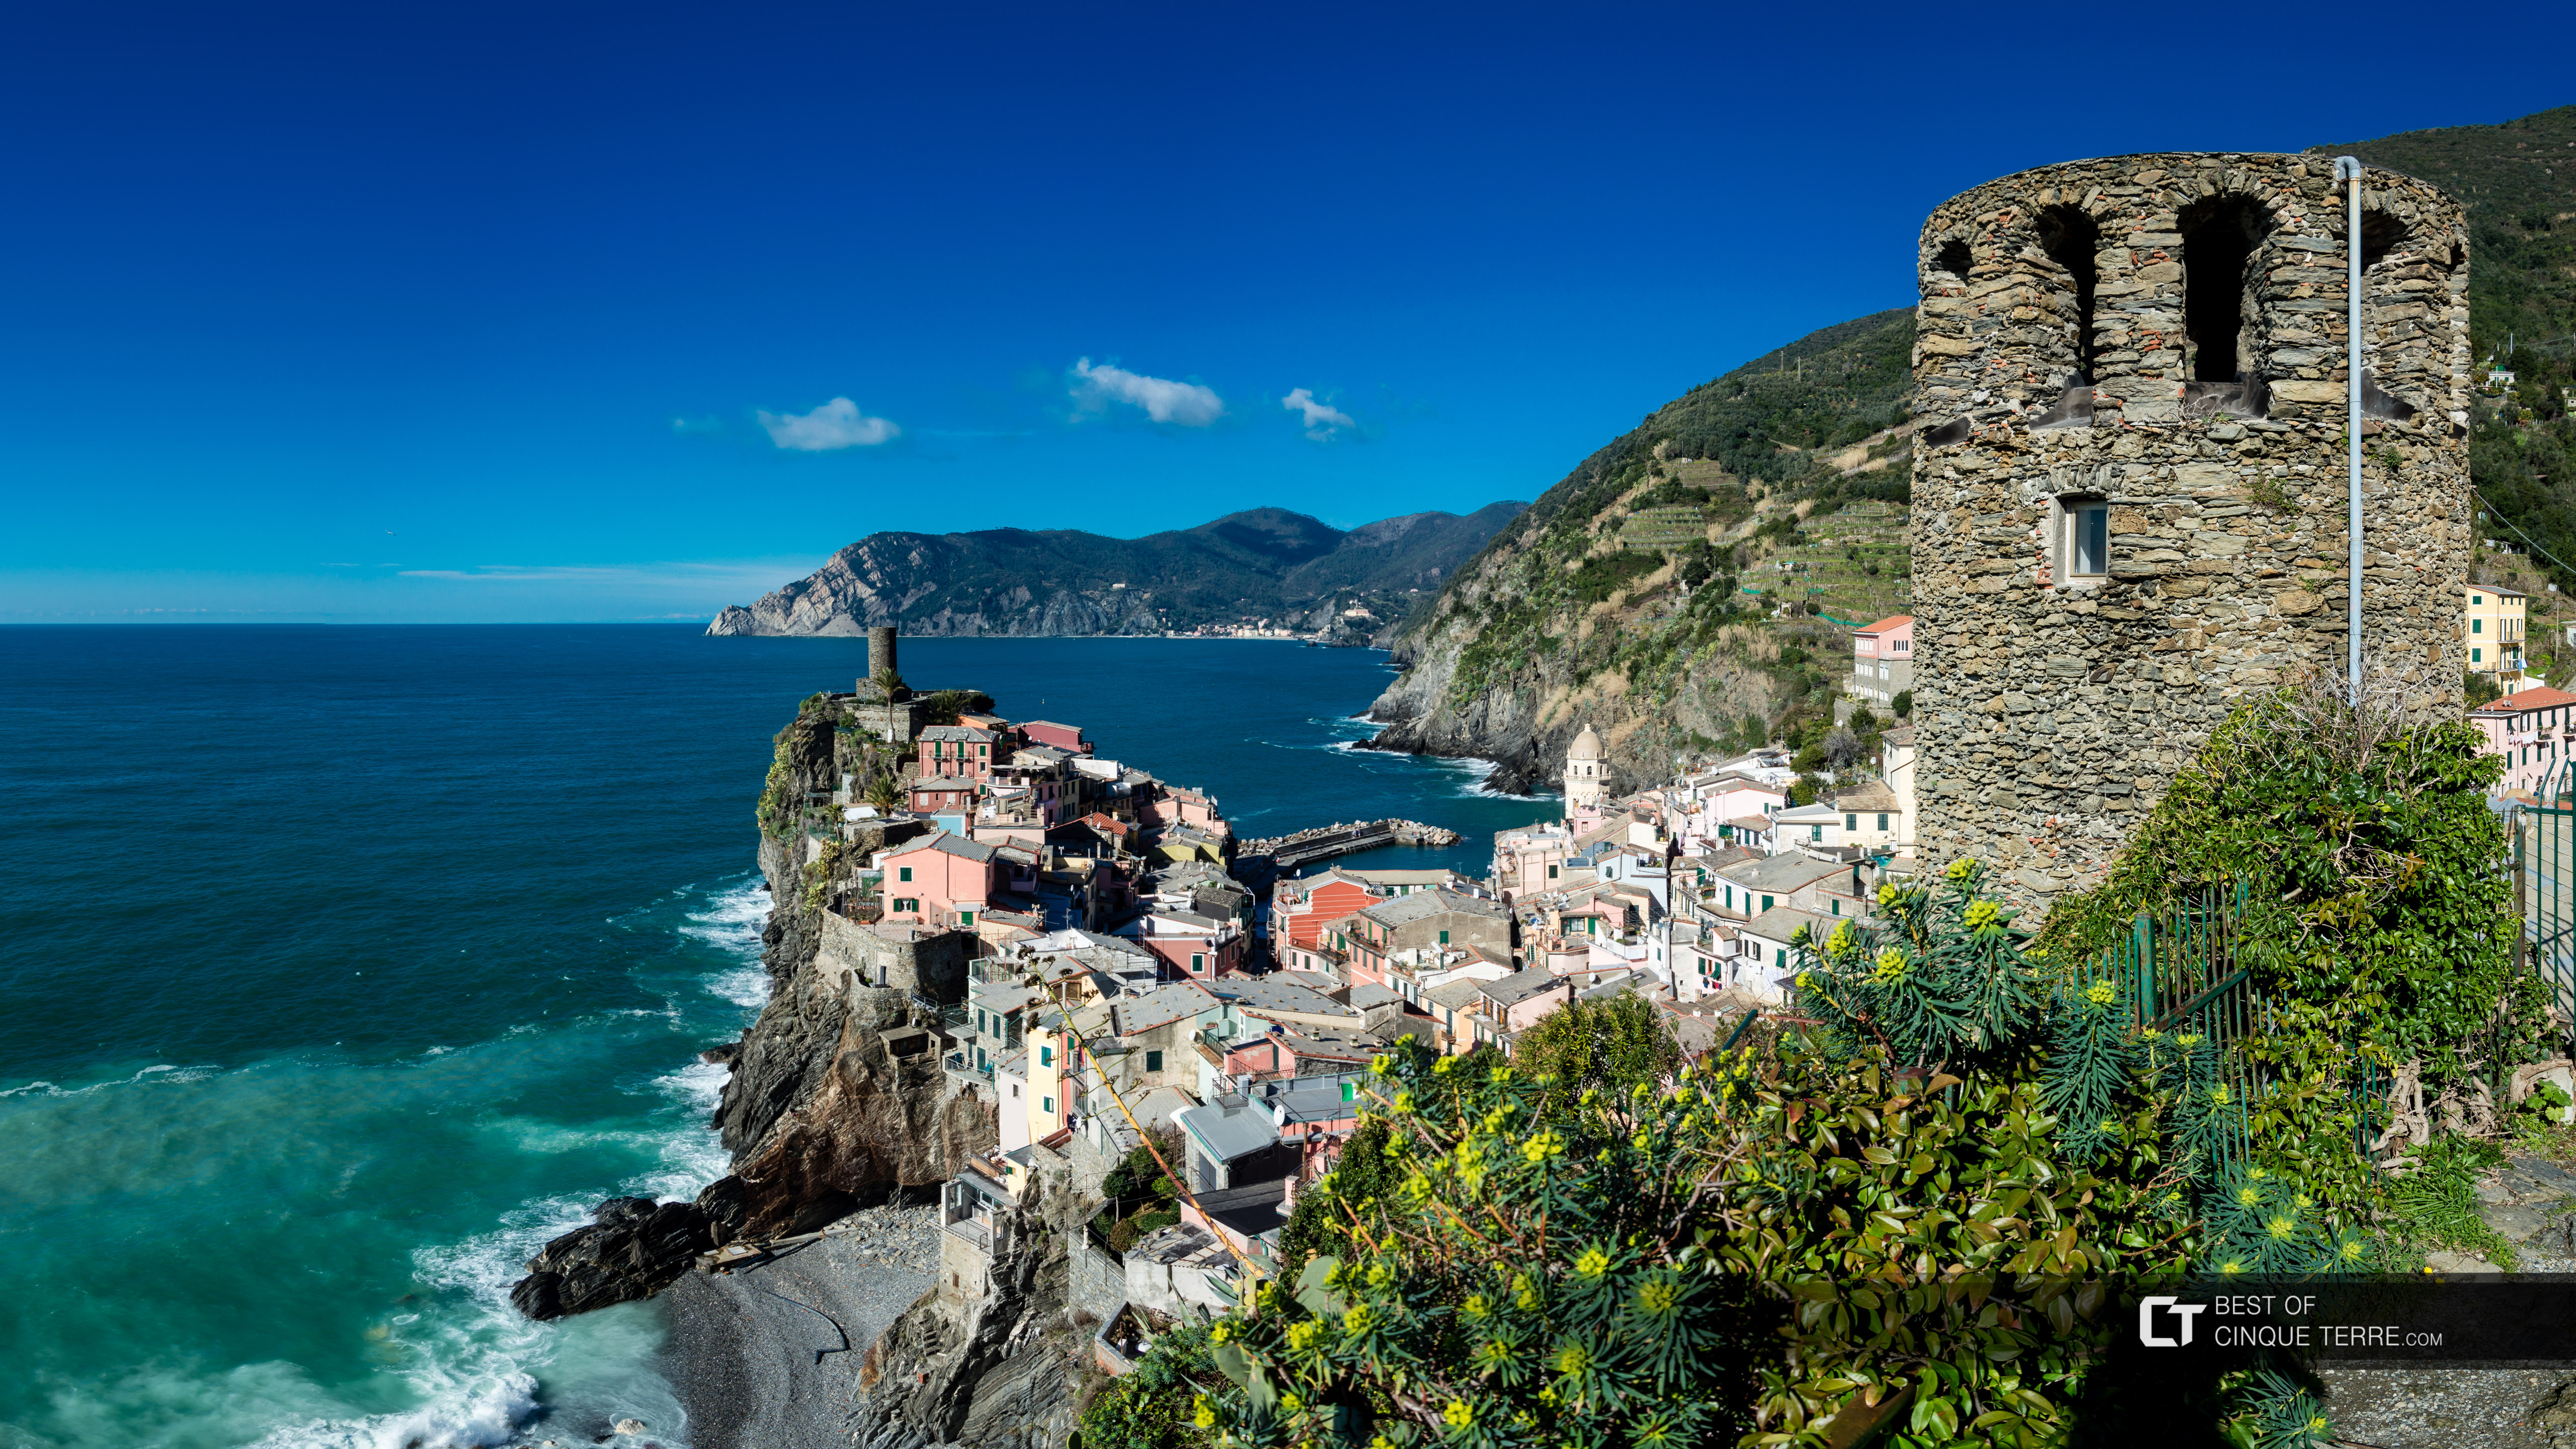 Vista panorâmica da vila da trilha Sentiero Azzurro, Vernazza, Cinque Terre, Itália